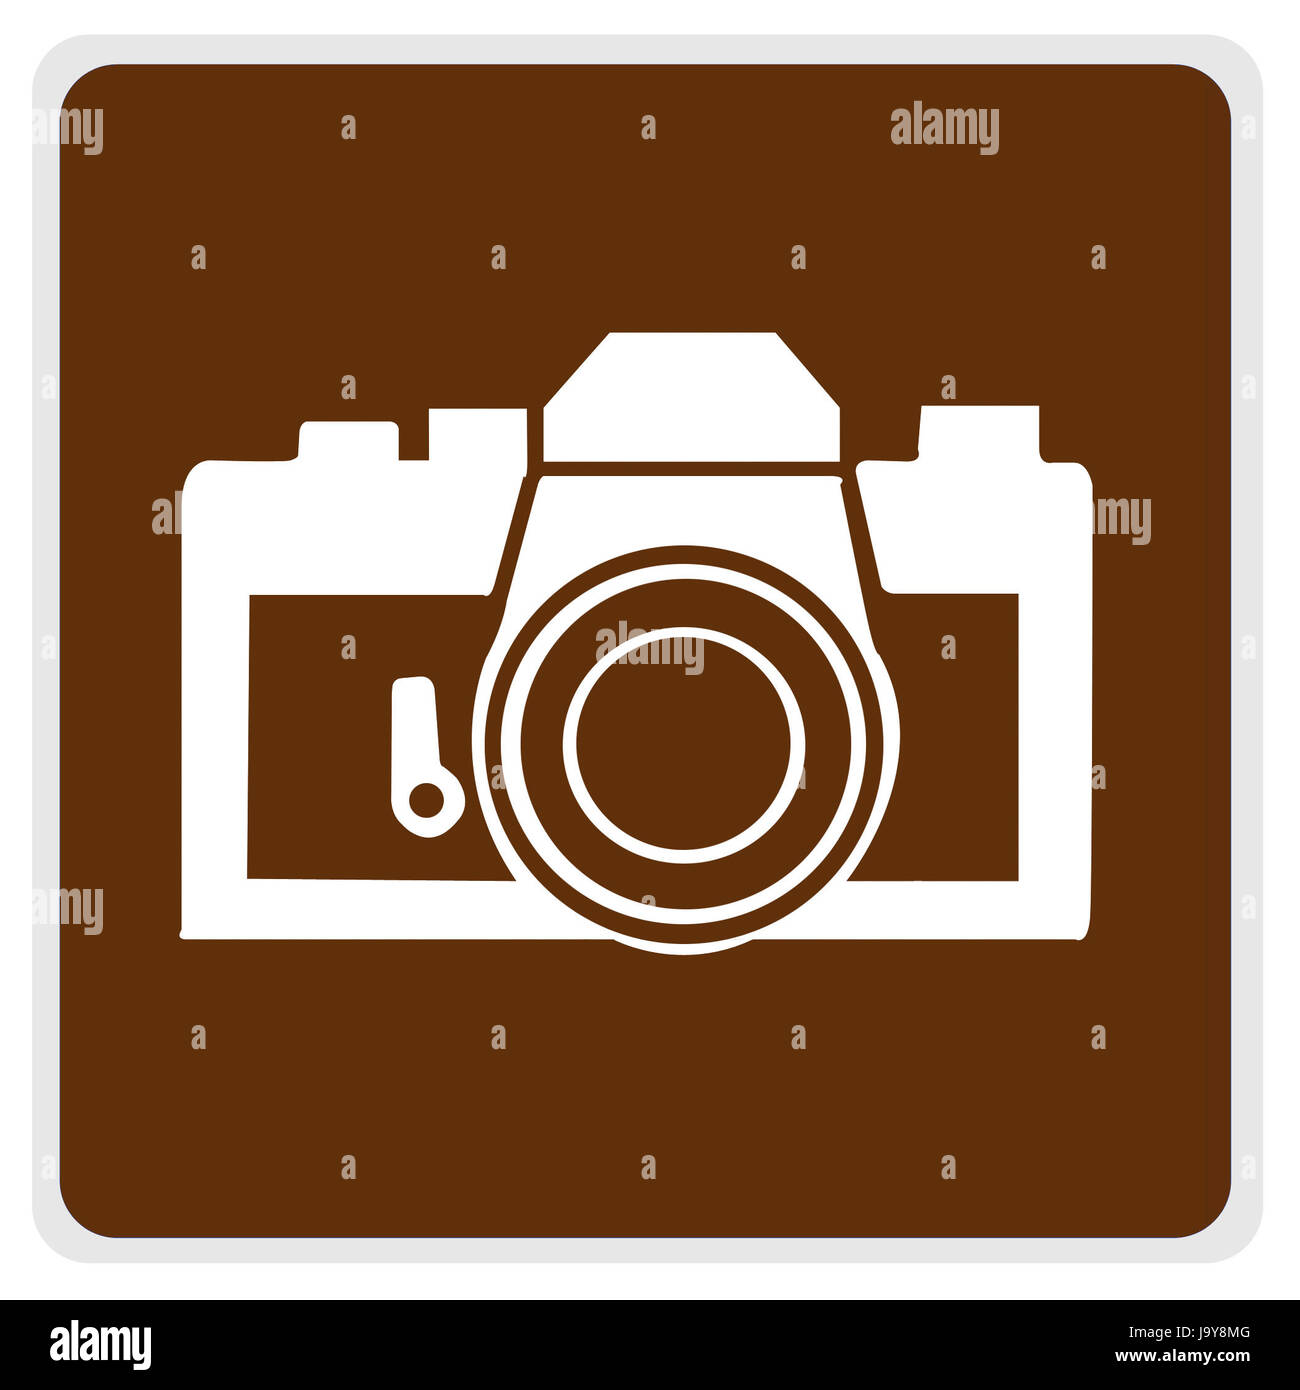 Cartello stradale - marrone, bianco fotocamera - con il percorso Foto Stock